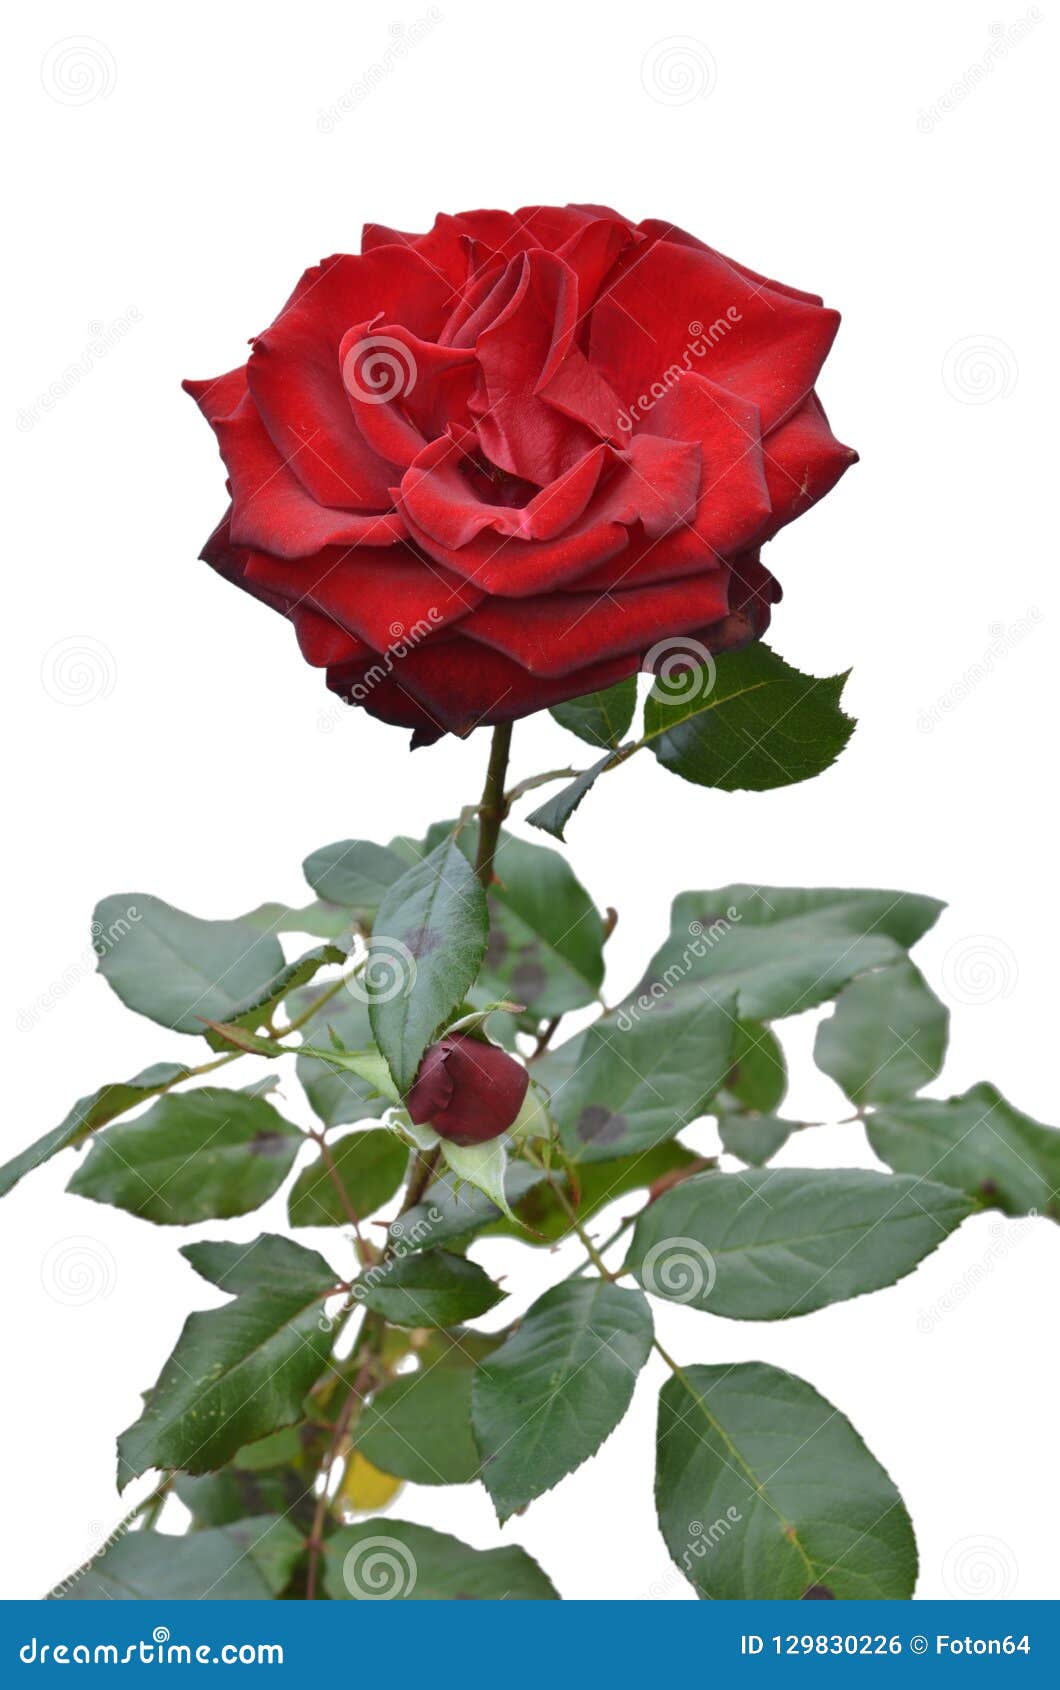 Red Rose Isolated background - Với nền trắng tẩy sạch, hình ảnh của bông hồng đỏ được lồng ghép một cách tuyệt vời. Hình ảnh sẽ giúp bạn tập trung vào độ rõ nét và đương nhiên là sắc đỏ rực rỡ của hoa. Cảm nhận vẻ đẹp tuyệt vời mà bông hồng đỏ mang lại trên nền trắng tịnh khiết.